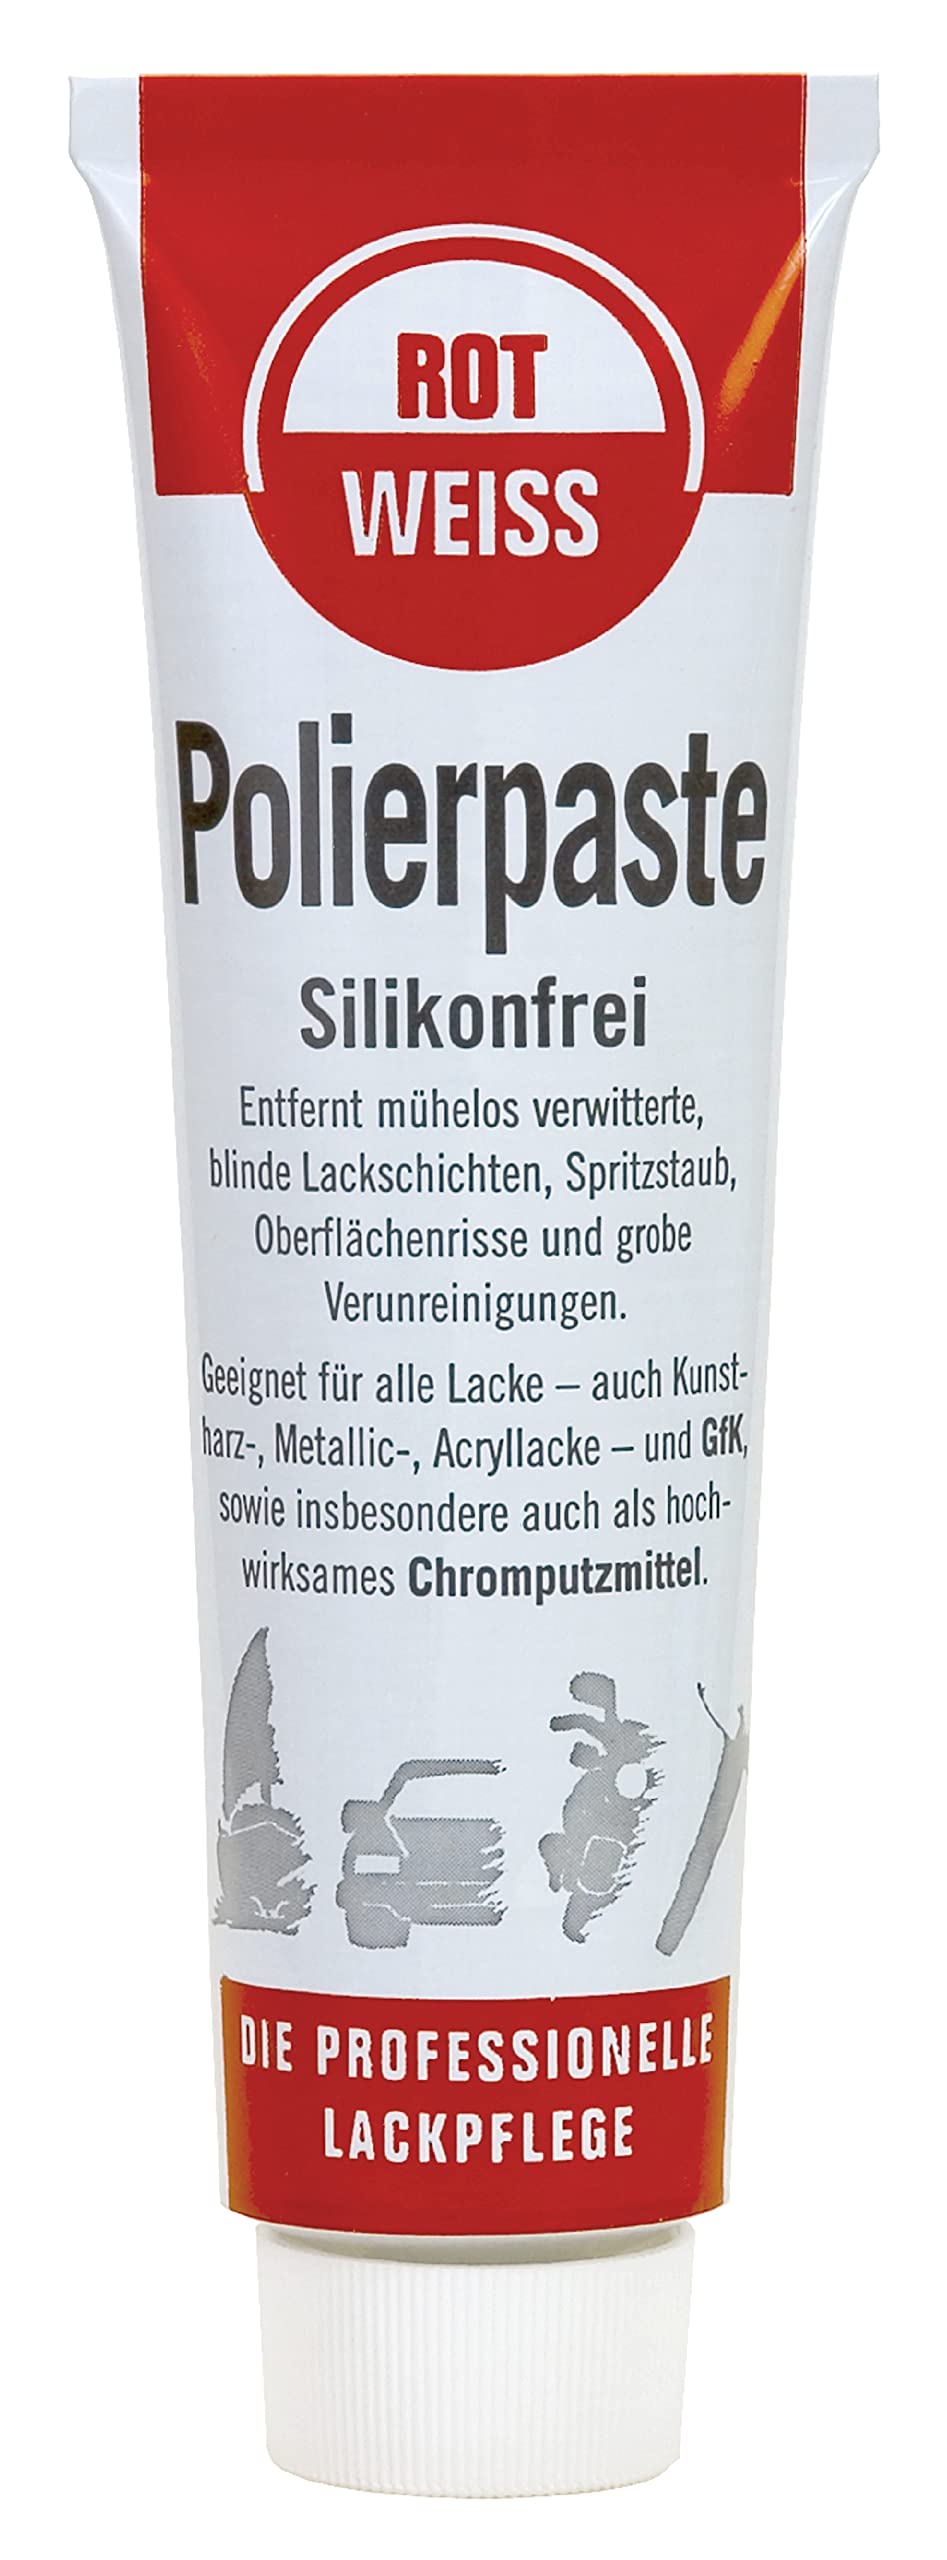 ROTWEISS Polierpaste (100ml) Silikonfrei von ROT WEISS